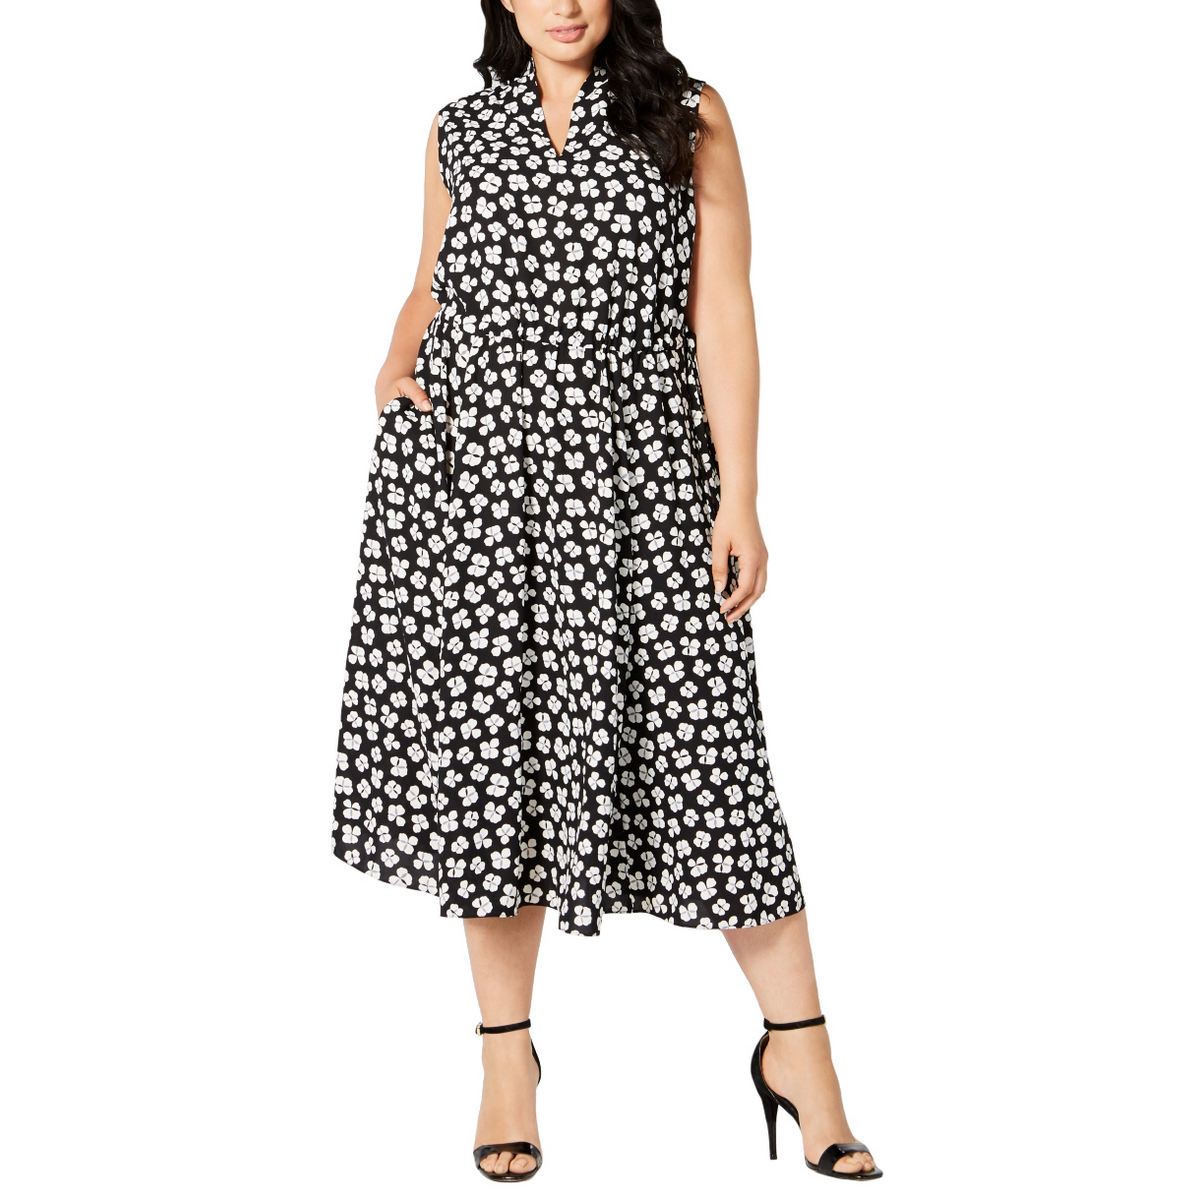 ANNE KLEIN NEW Women's Plus Size Printed Drawstring Midi A-Line Dress ...